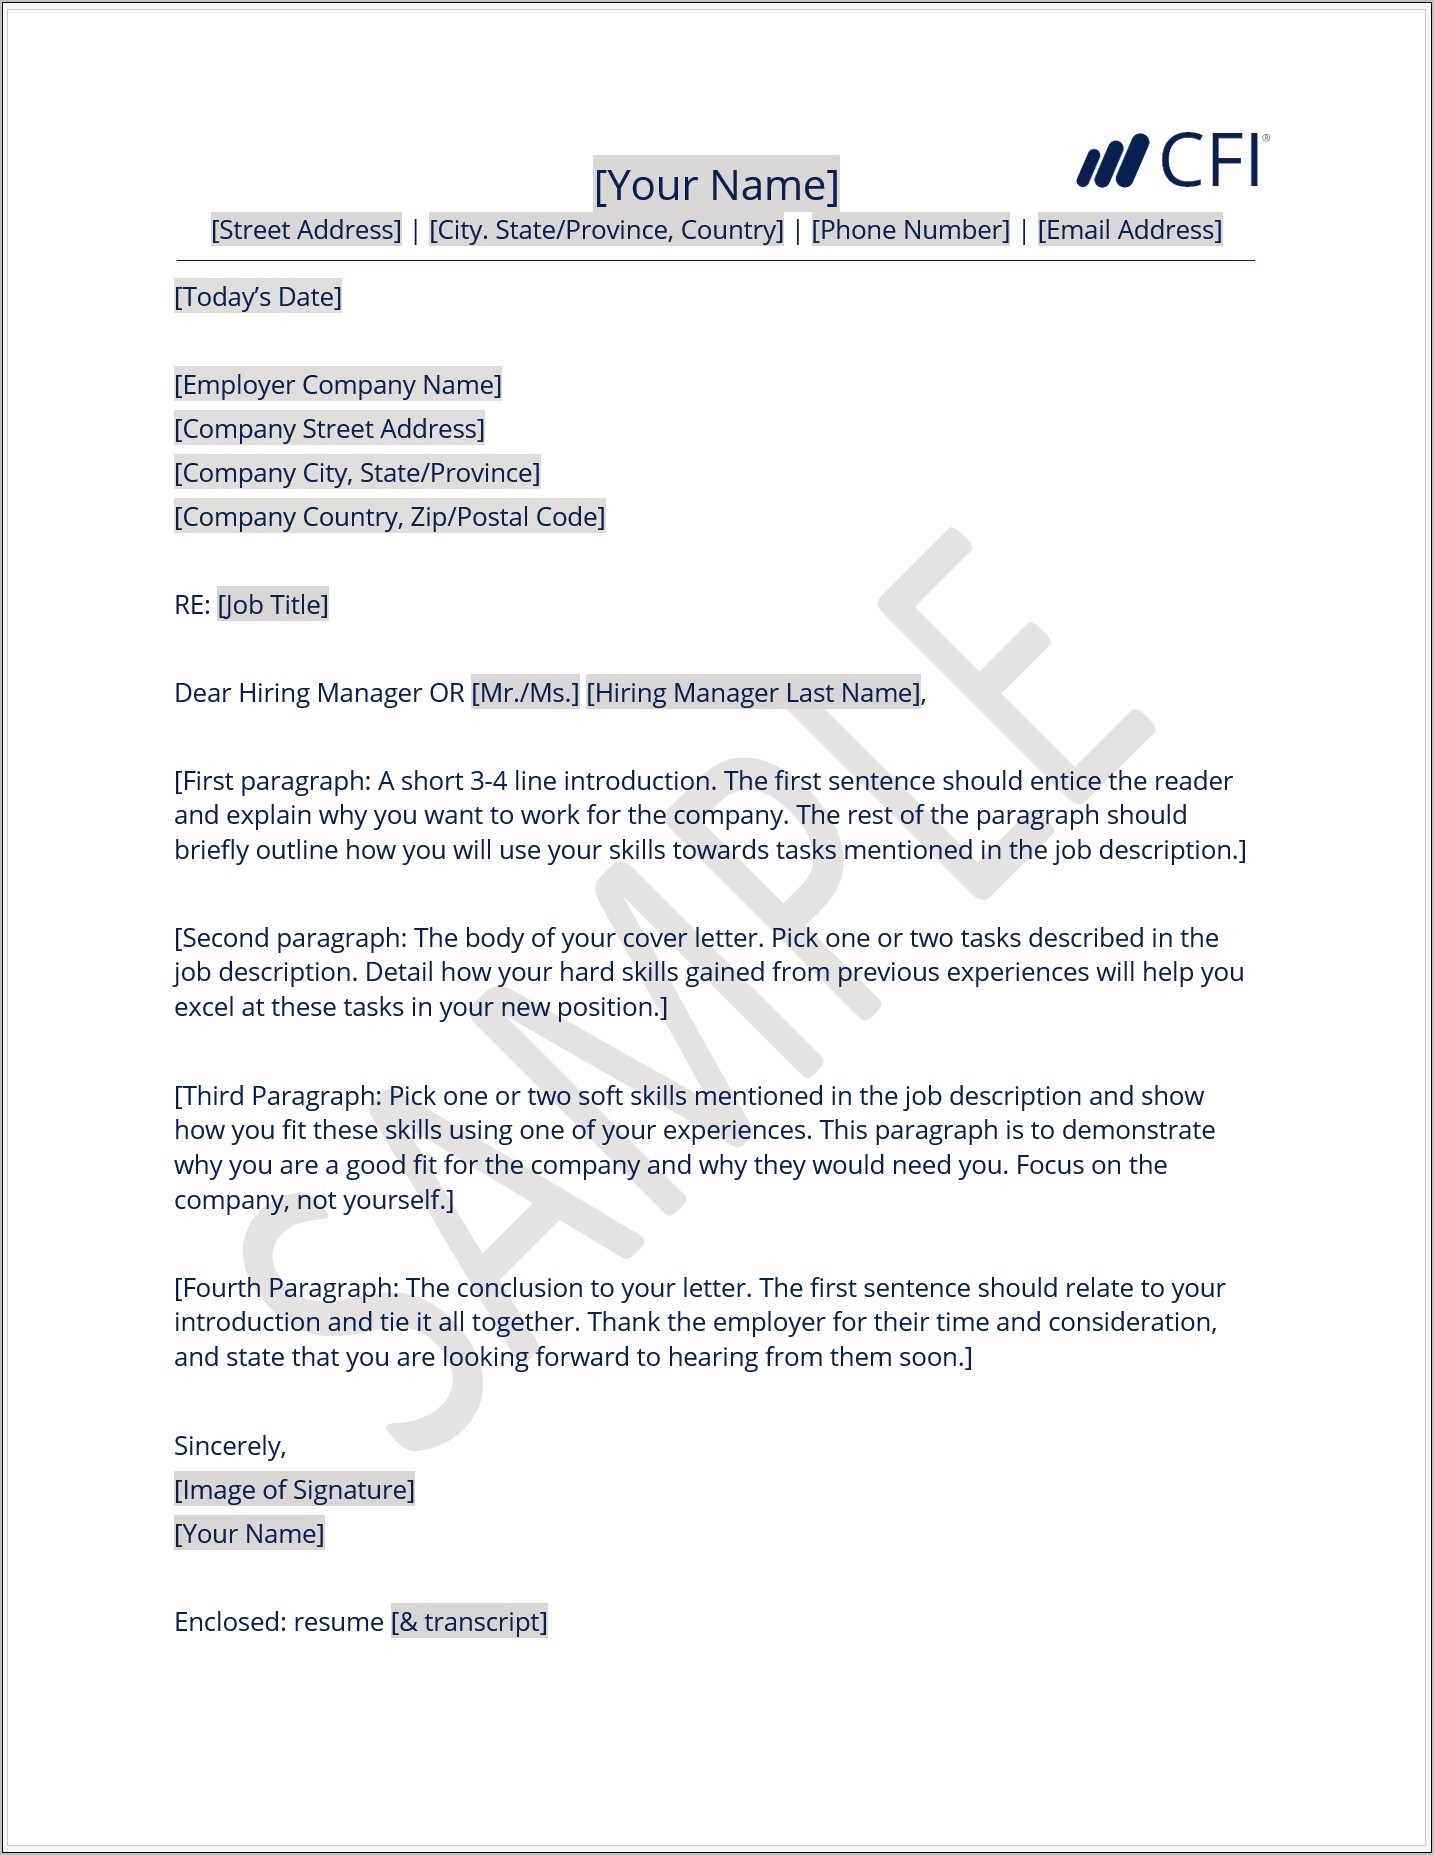 Resume Short Cover Letter Sample